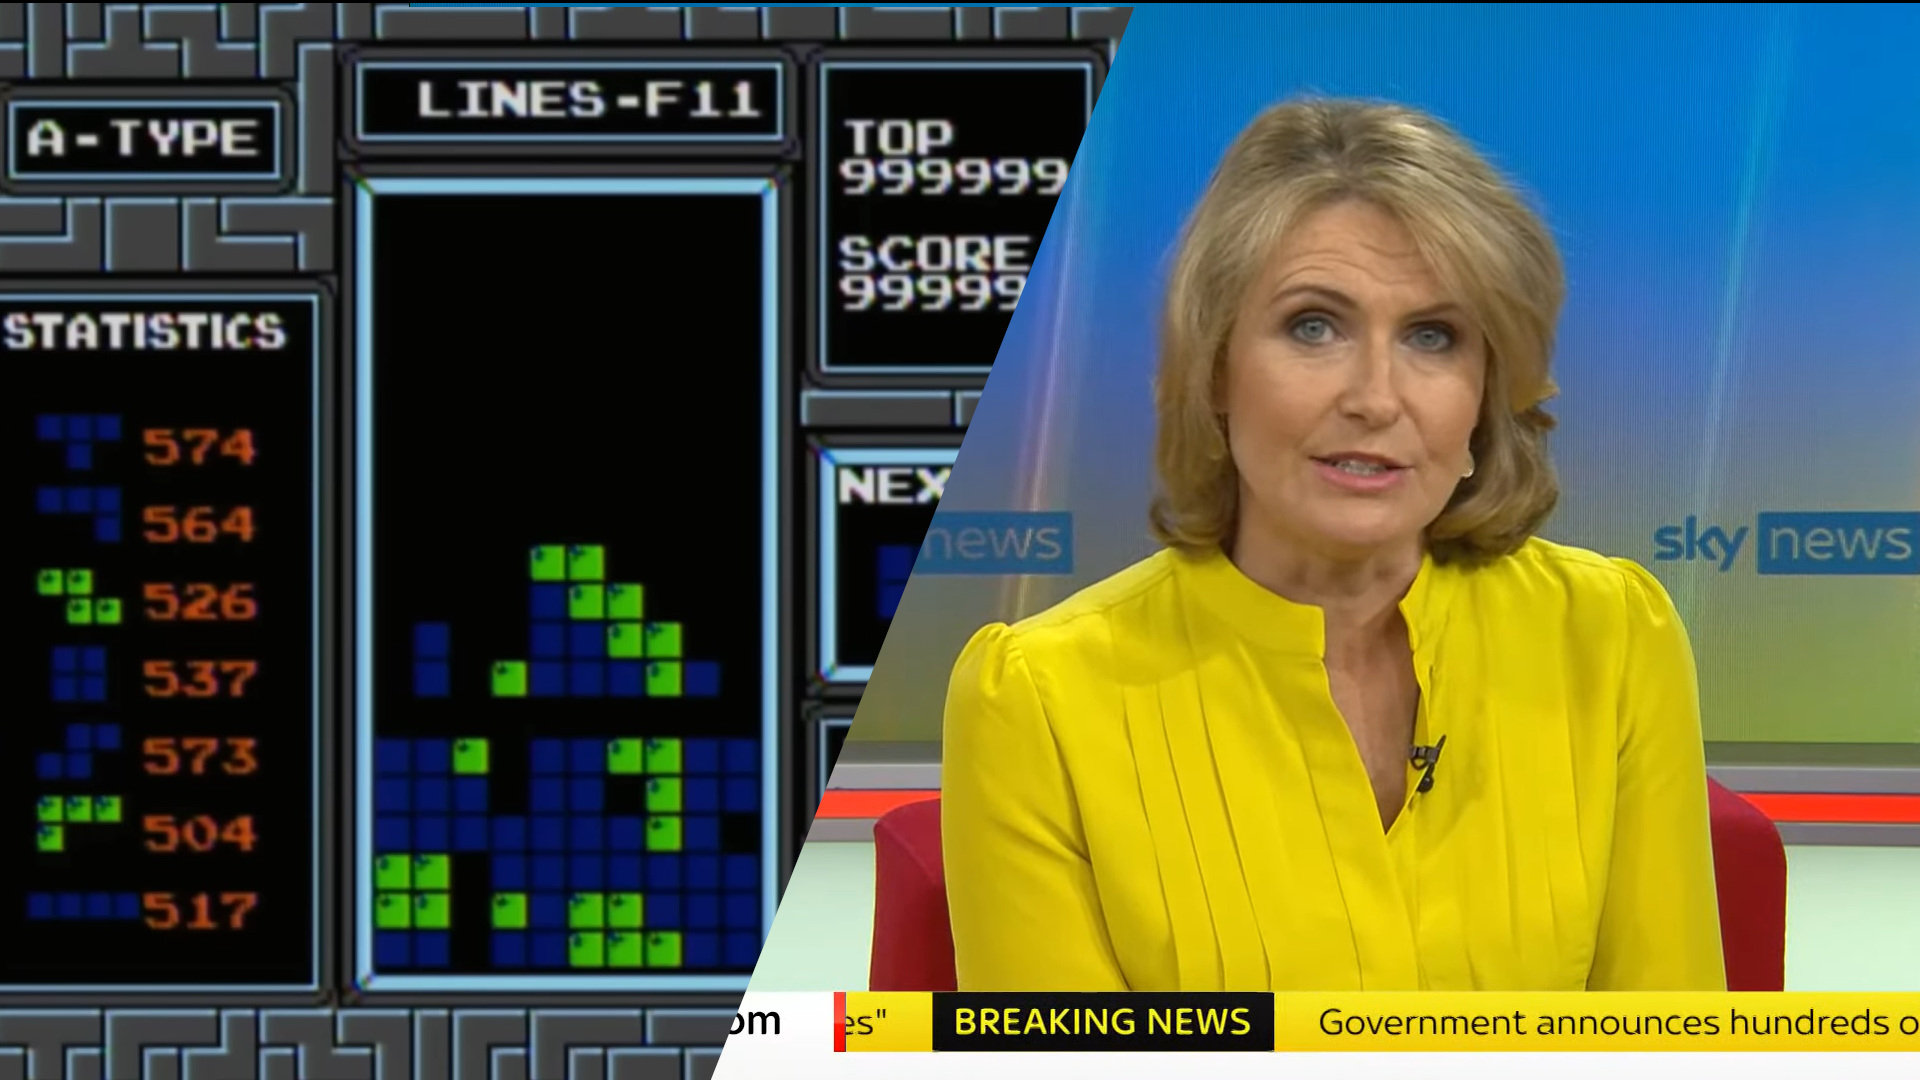 Prezenterka wiadomości w żółtej marynarce siedzi na planie studia telewizyjnego, obok wyświetlany jest ekran gry Tetris z maksymalnym wynikiem i liczbą linii.